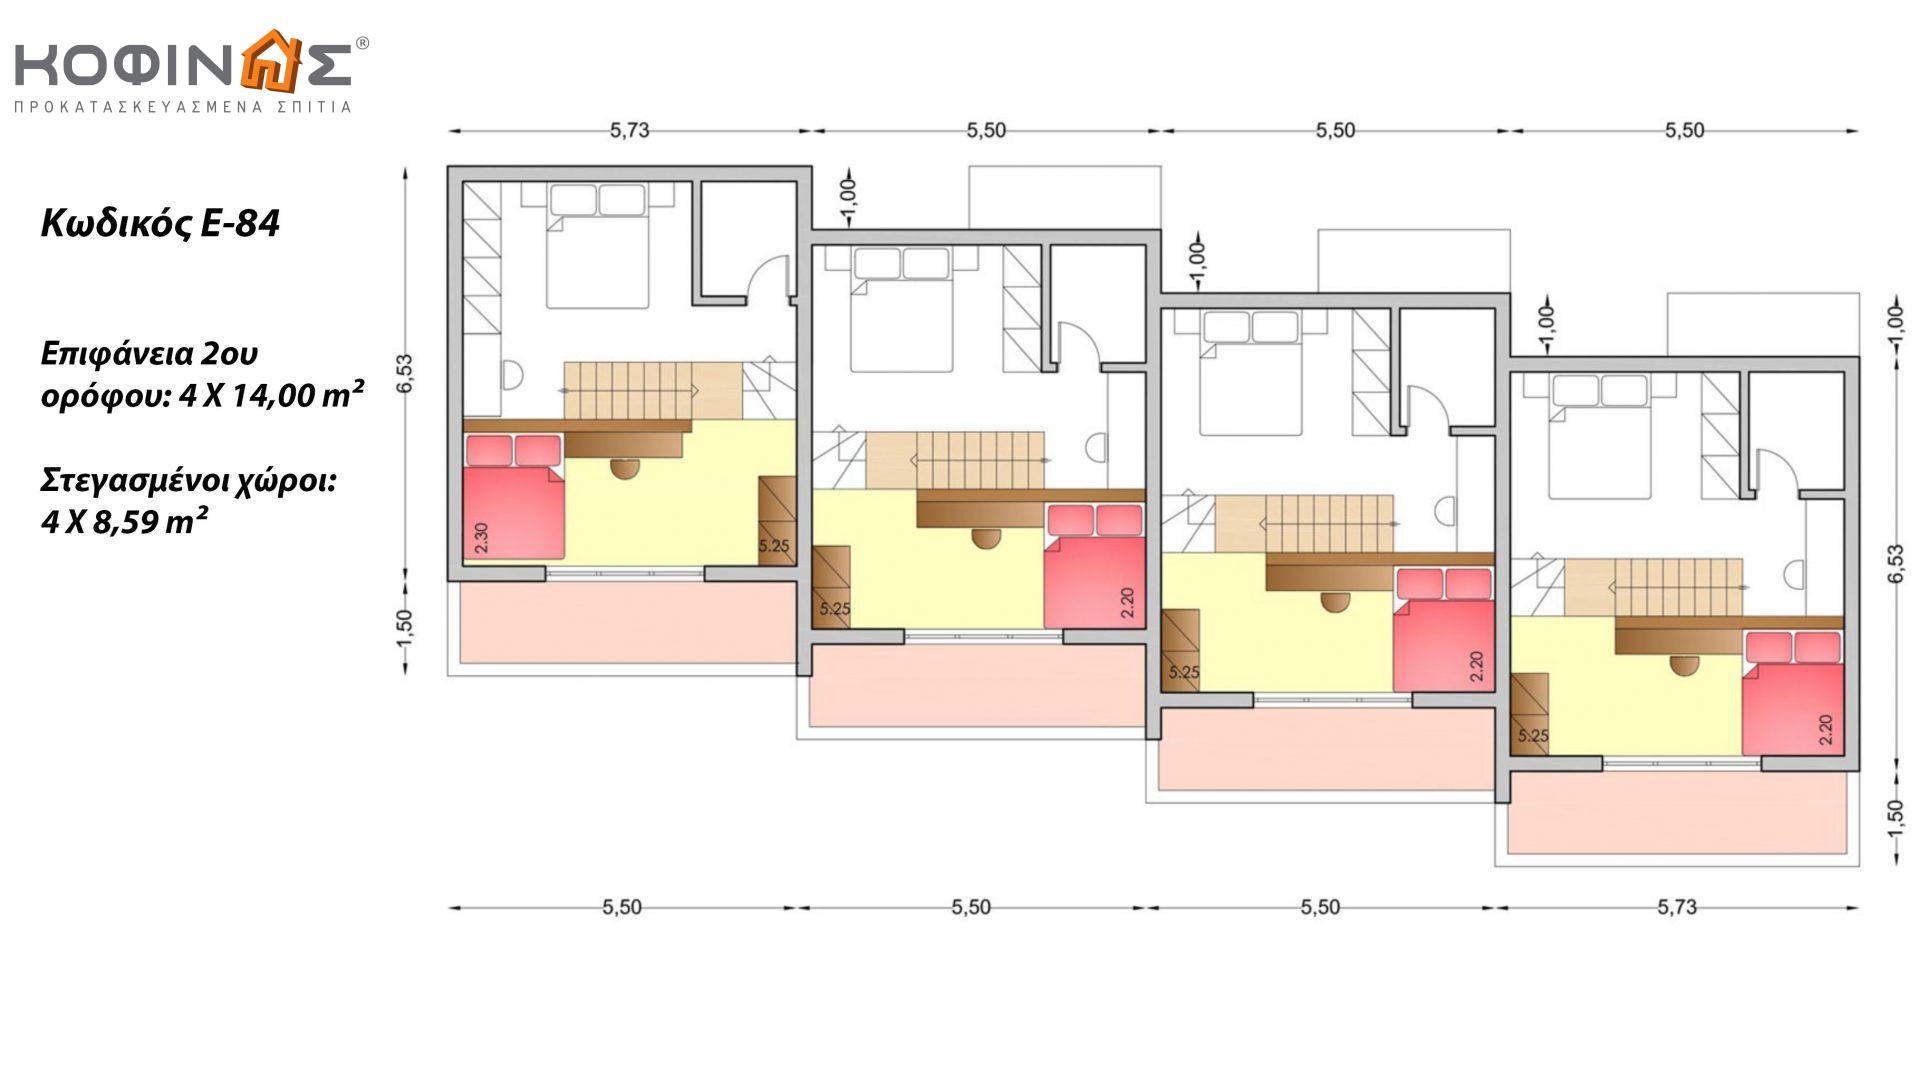 Συγκρότημα Κατοικιών E-84, συνολικής επιφάνειας 4 x 84,17 = 336,68 τ.μ., συνολική επιφάνεια στεγασμένων χώρων 43,36 τ.μ.